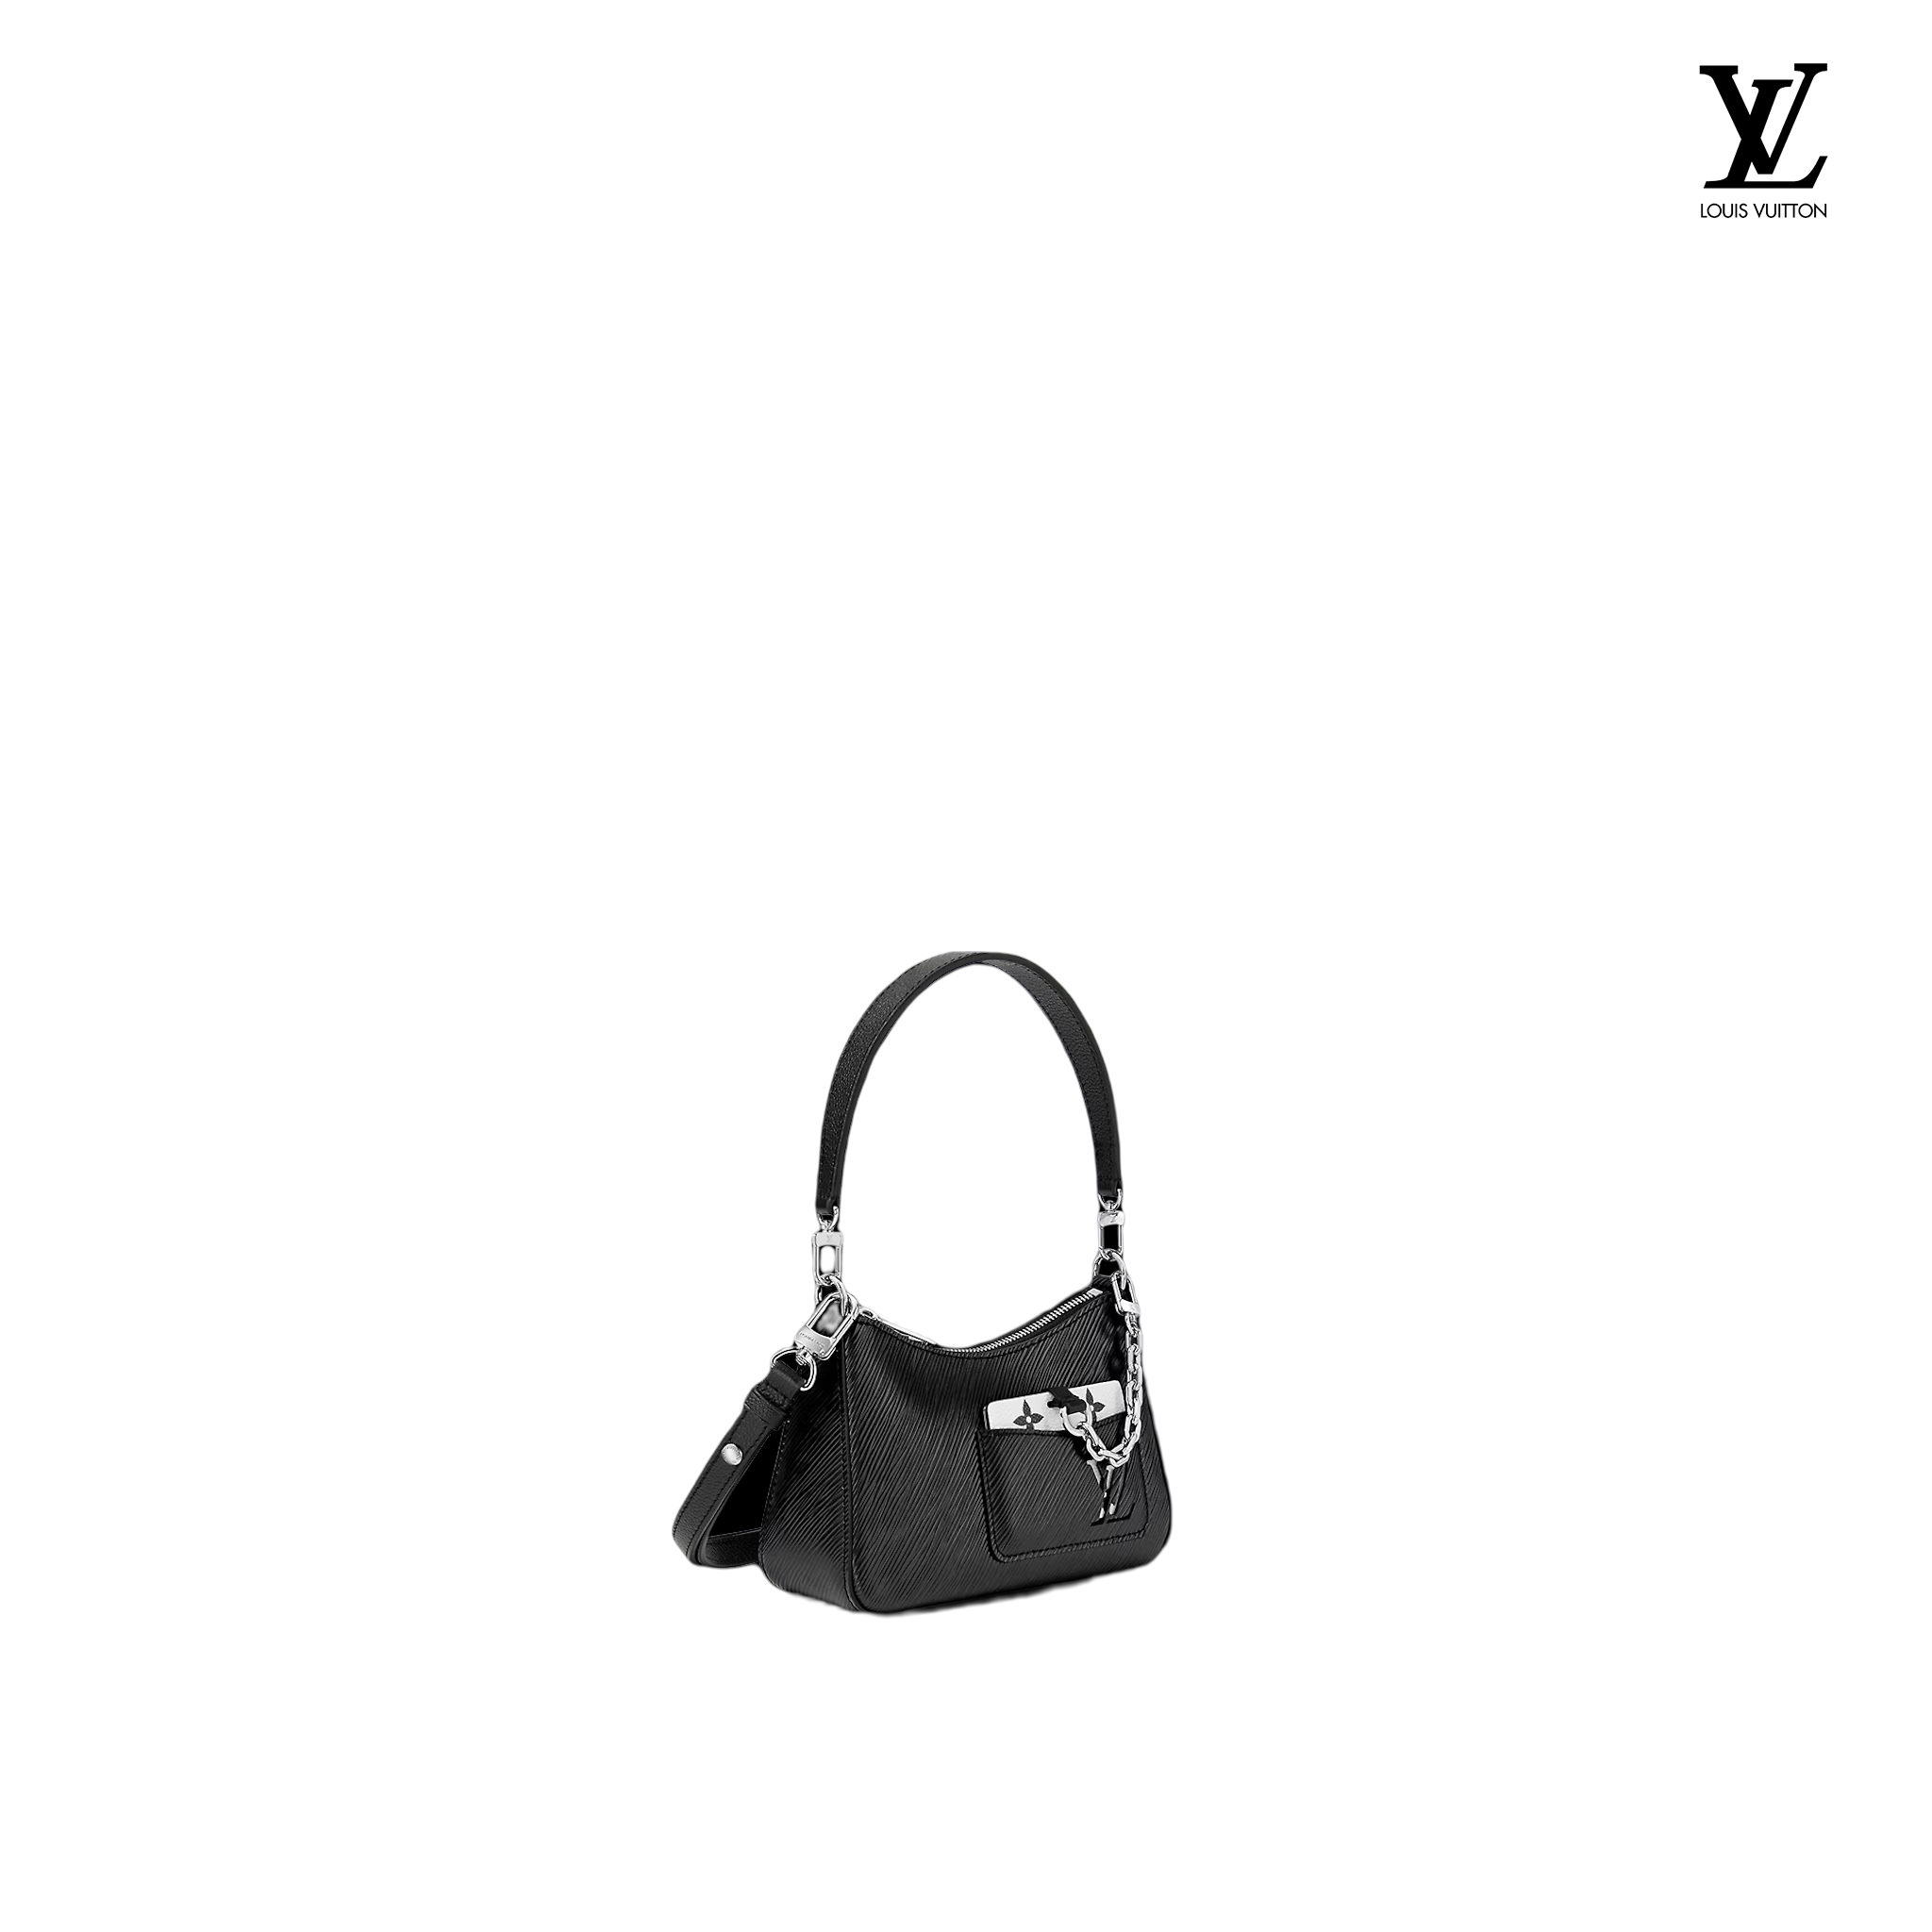 Louis Vuitton x YK Marellini Epi Leather - Handbags